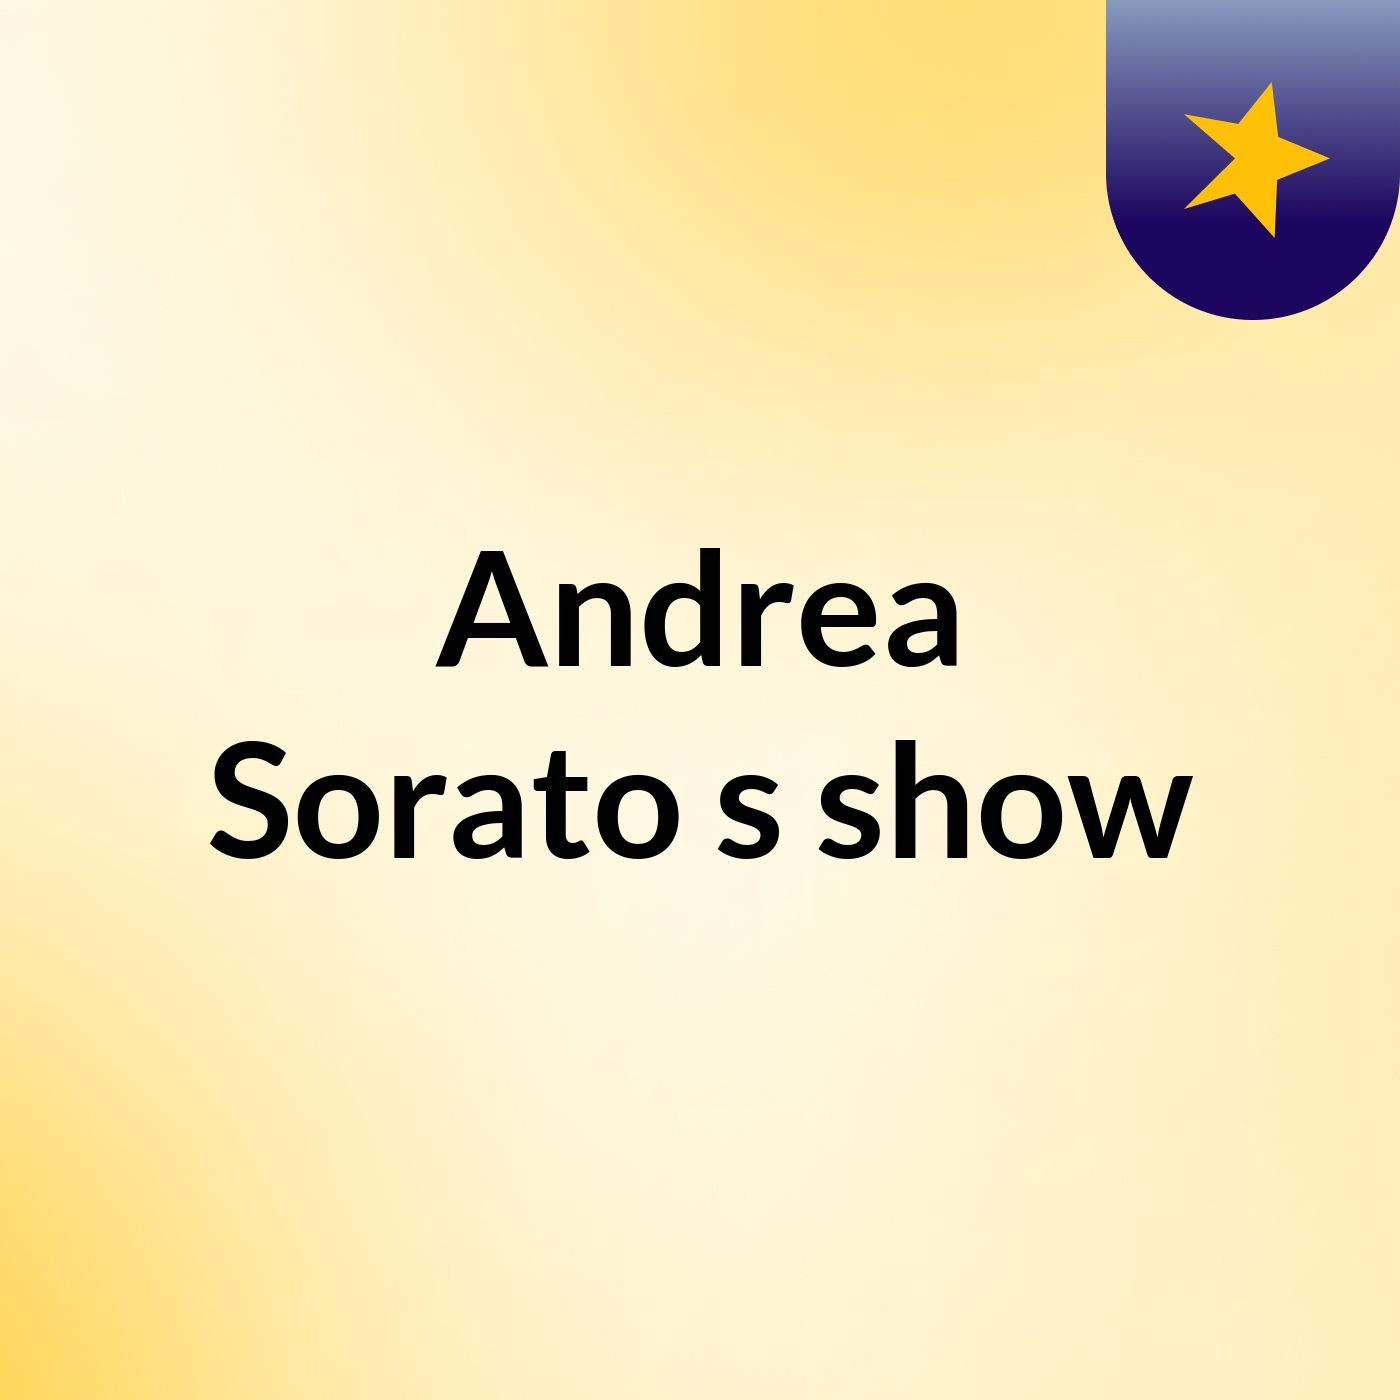 Andrea Sorato's show